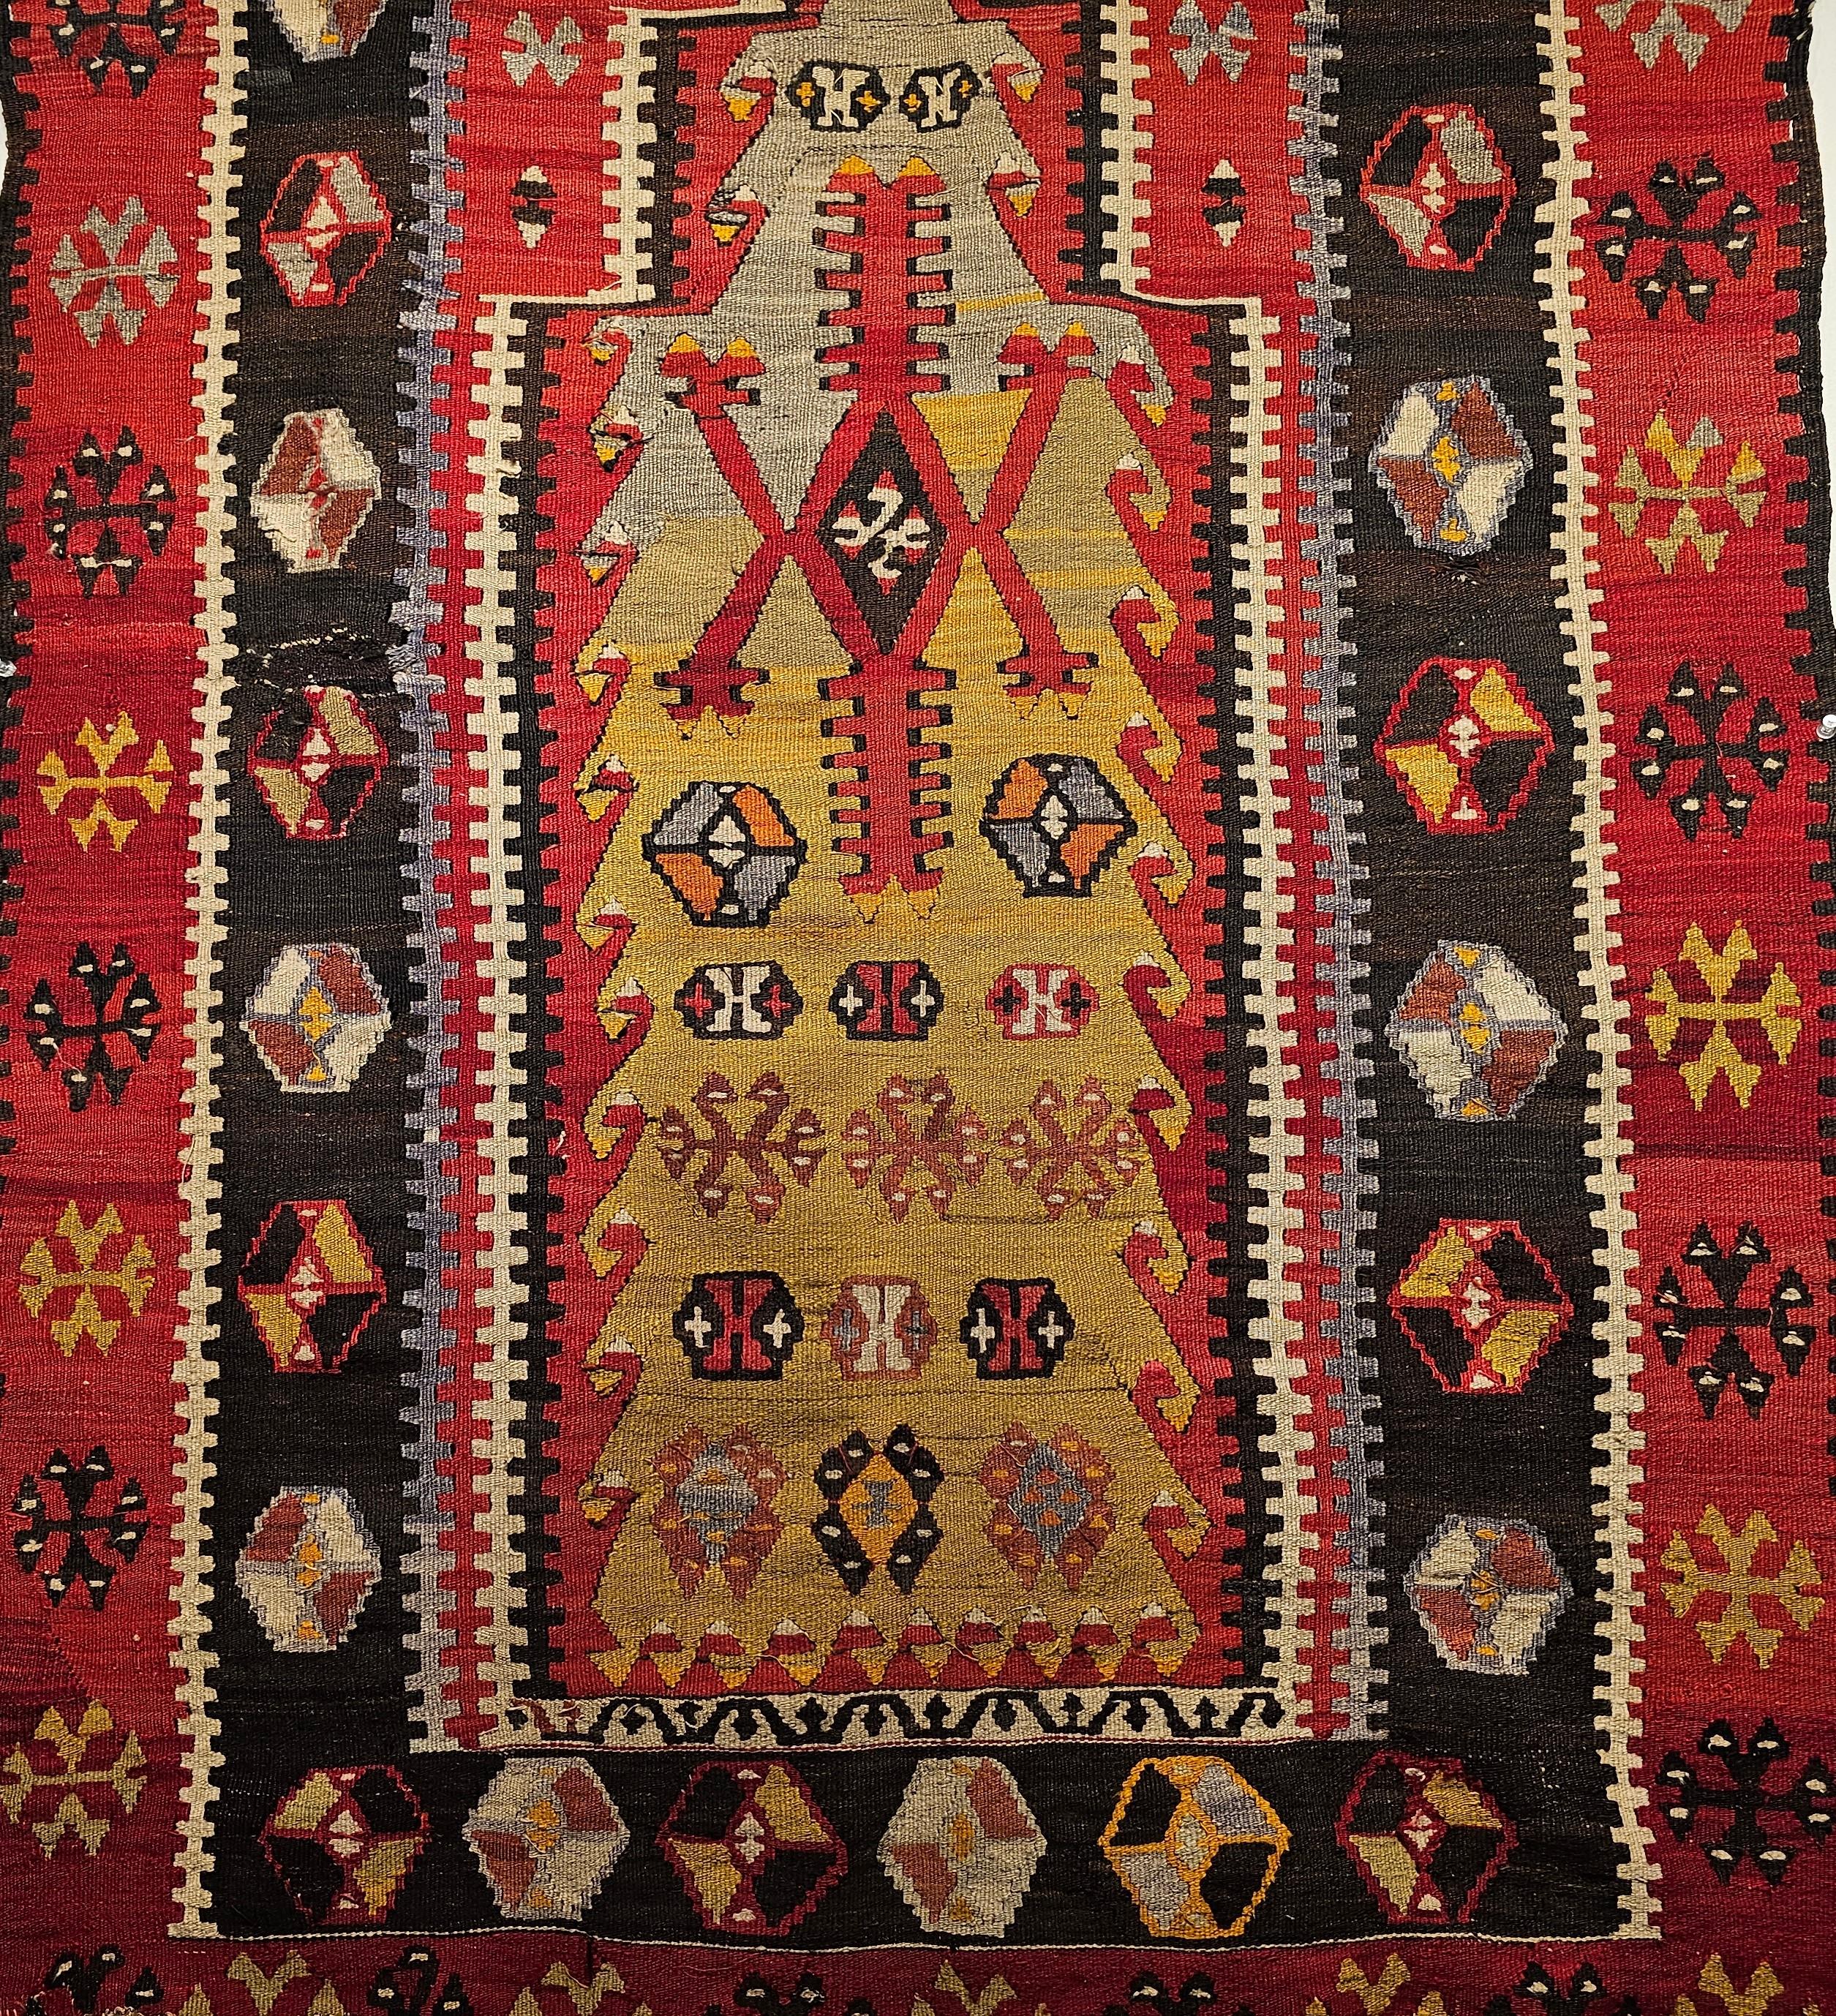 Magnifique Rug & Kilim anatolien à motif de tapis de prière du début des années 1900 dans des couleurs vertes, jaunes, rouges et noires. Le magnifique vert du Mihrab (niche de prière) de ce Rug & Kilim turc ancien ajoute au caractère unique de ce